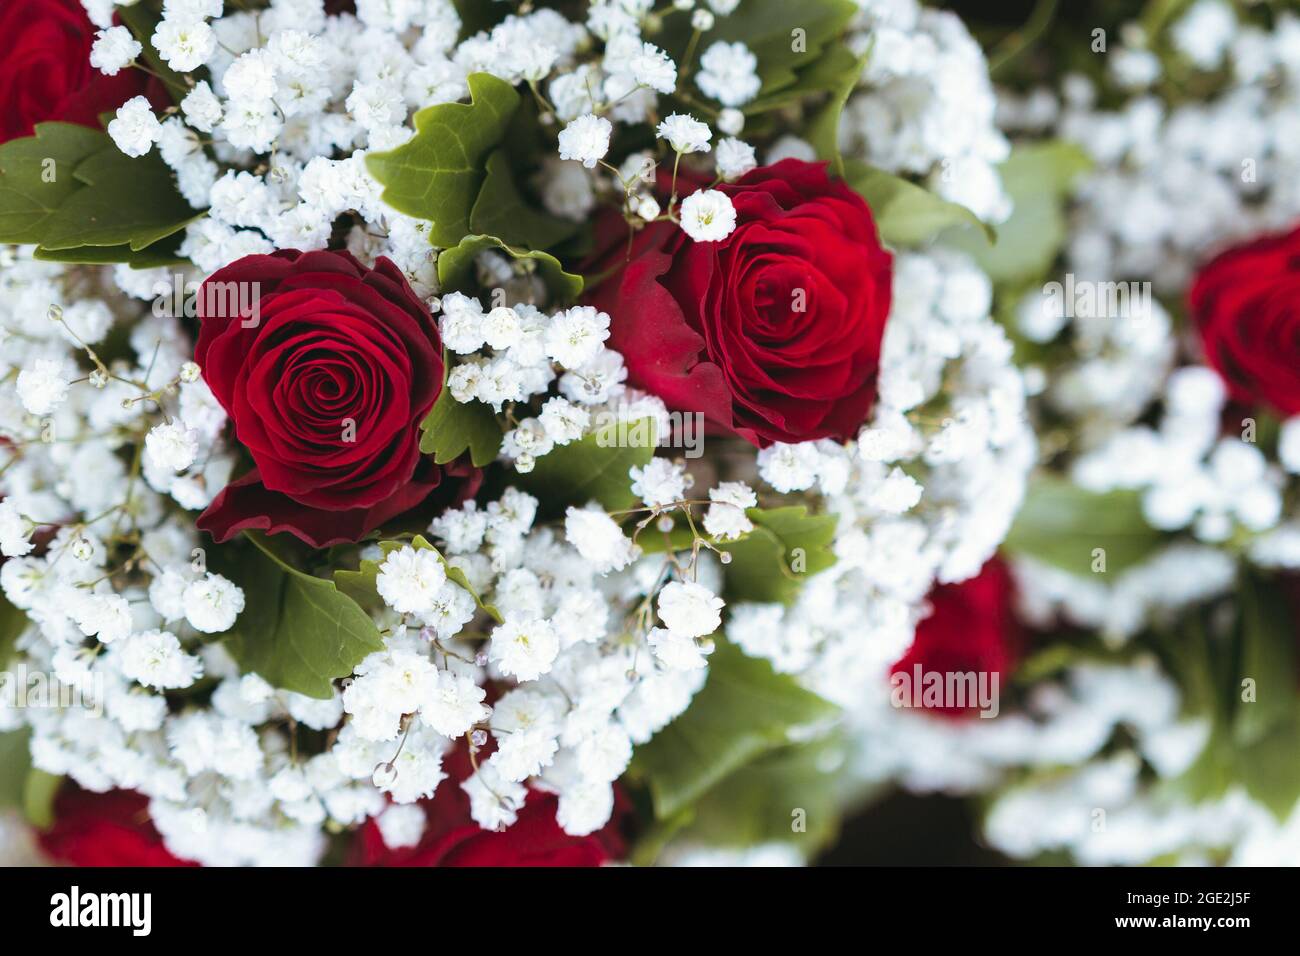 Aufnahme des Buketts aus roten Rosen und weißen kleinen Blumen zum Feiern.  Hochzeitskonzept Stockfotografie - Alamy